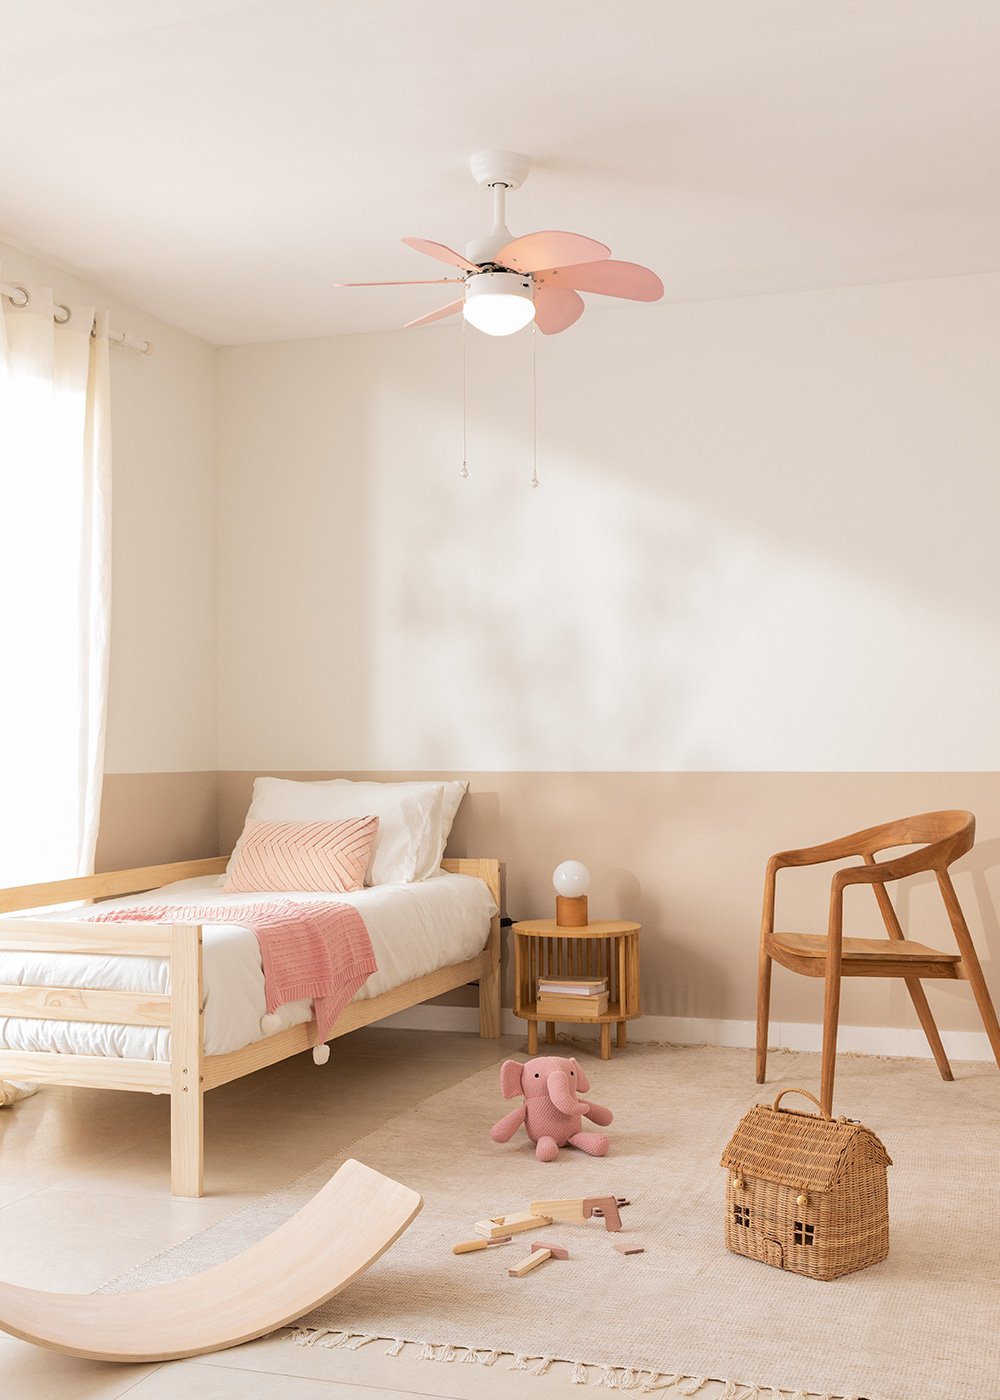 Ventilateur Plafond avec Lumiere Pour Chambre D'enfant, 30